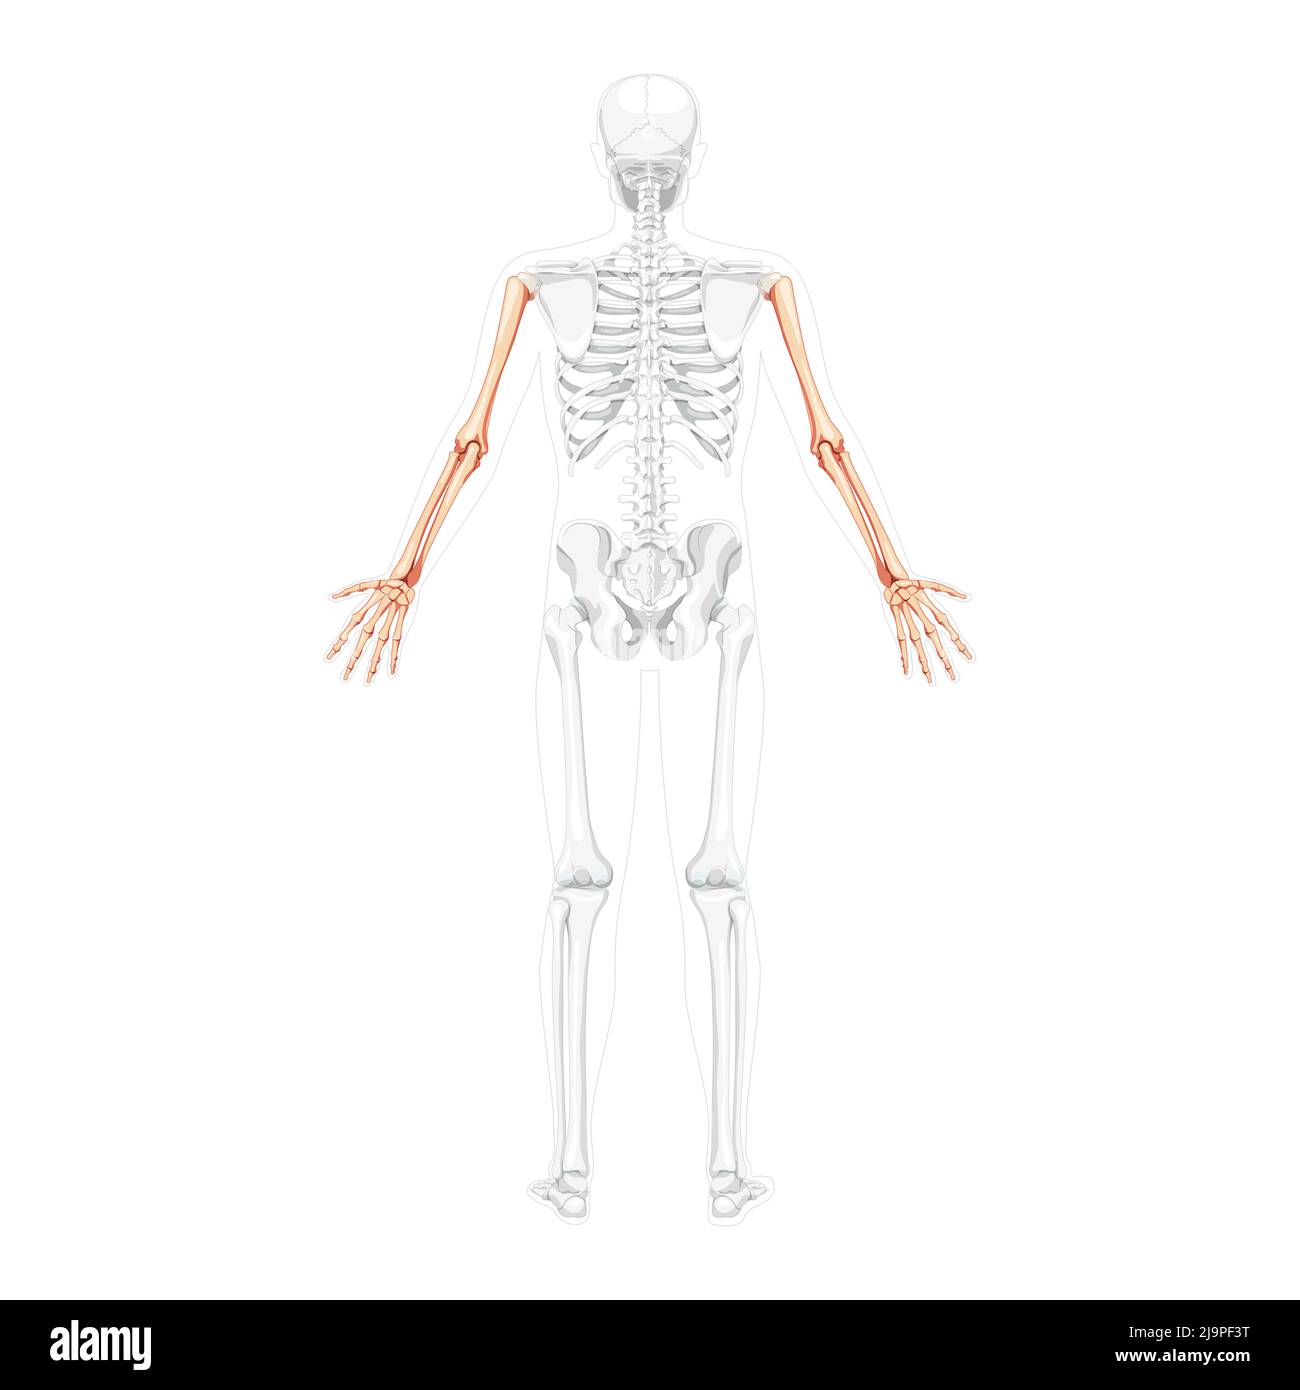 Skelettarme menschlicher Rücken hintere Rückenansicht mit teilweise transparenter Knochenposition. Hände, Unterarme realistisches, flaches, natürliches Farbkonzept Vektor-Illustration der Anatomie auf weißem Hintergrund isoliert Stock Vektor